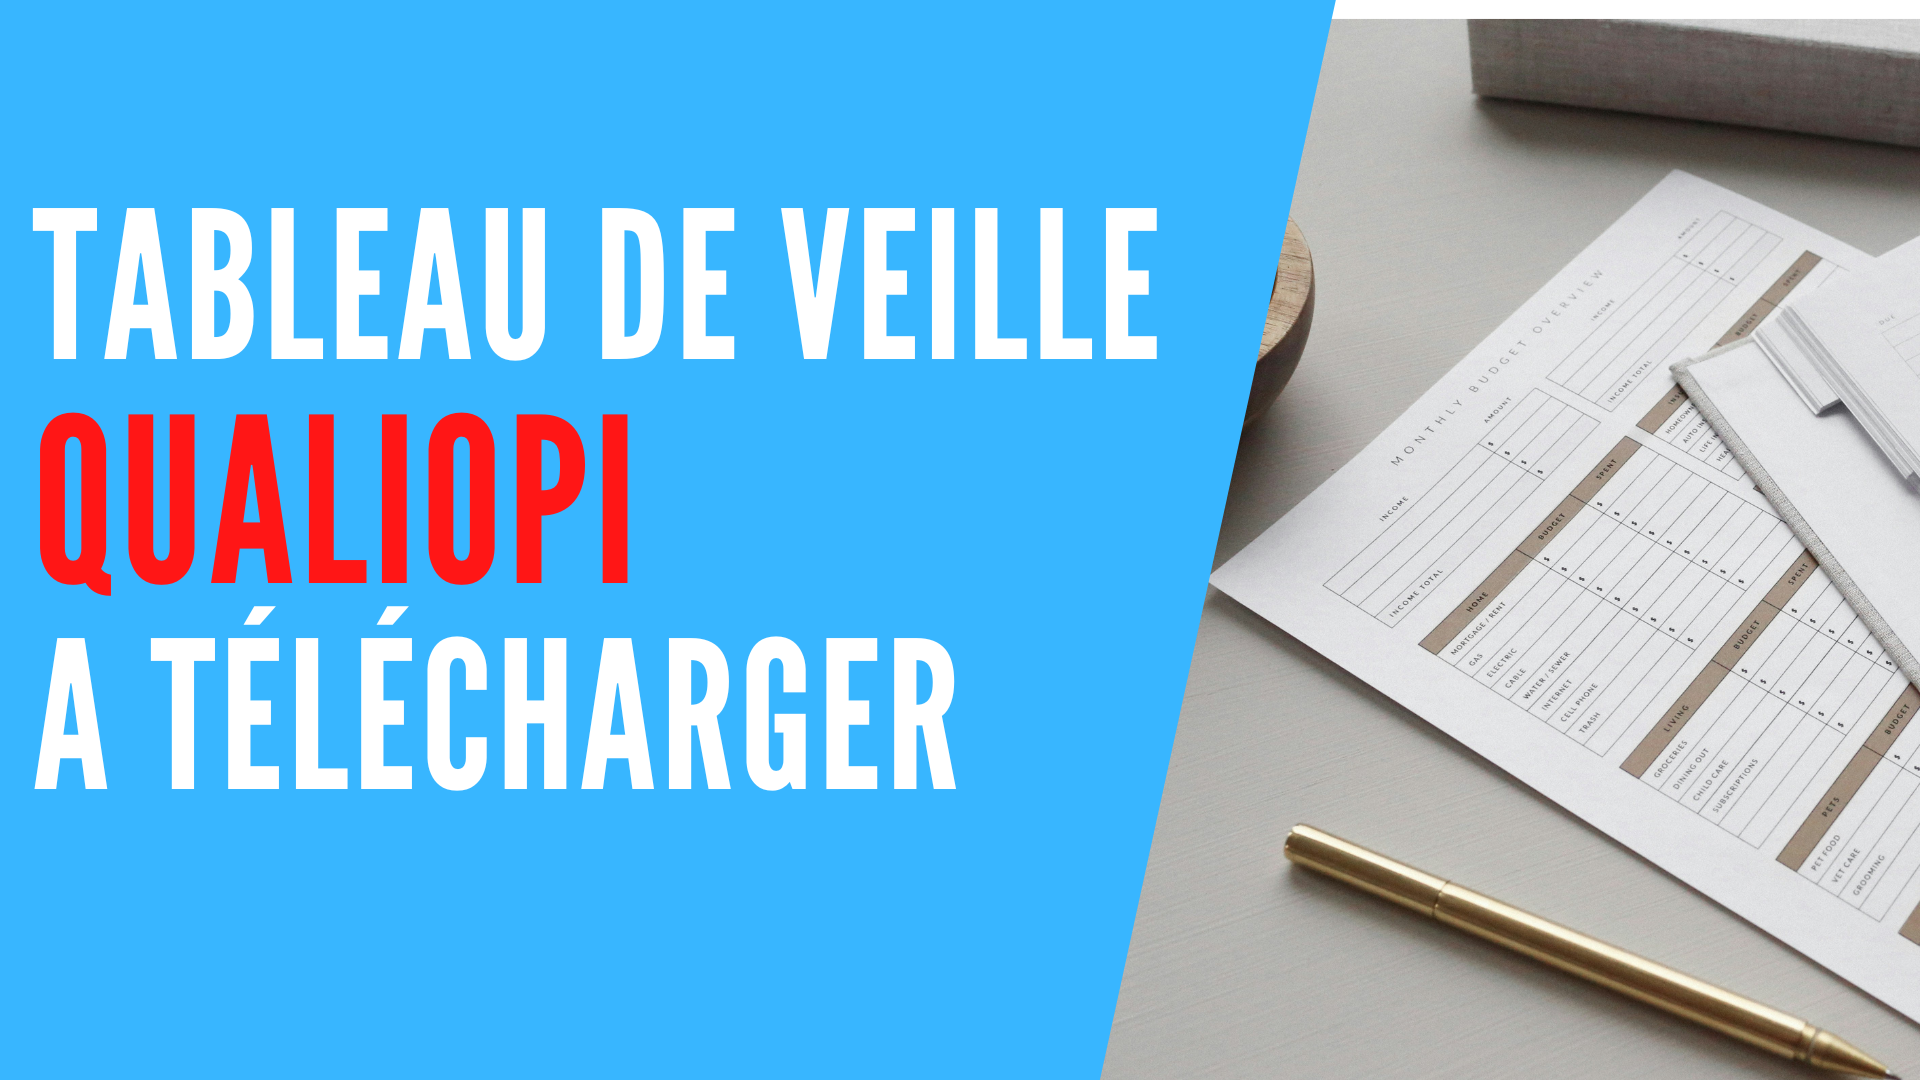 You are currently viewing Tableau de veille Qualiopi à télécharger – Digi-Certif®